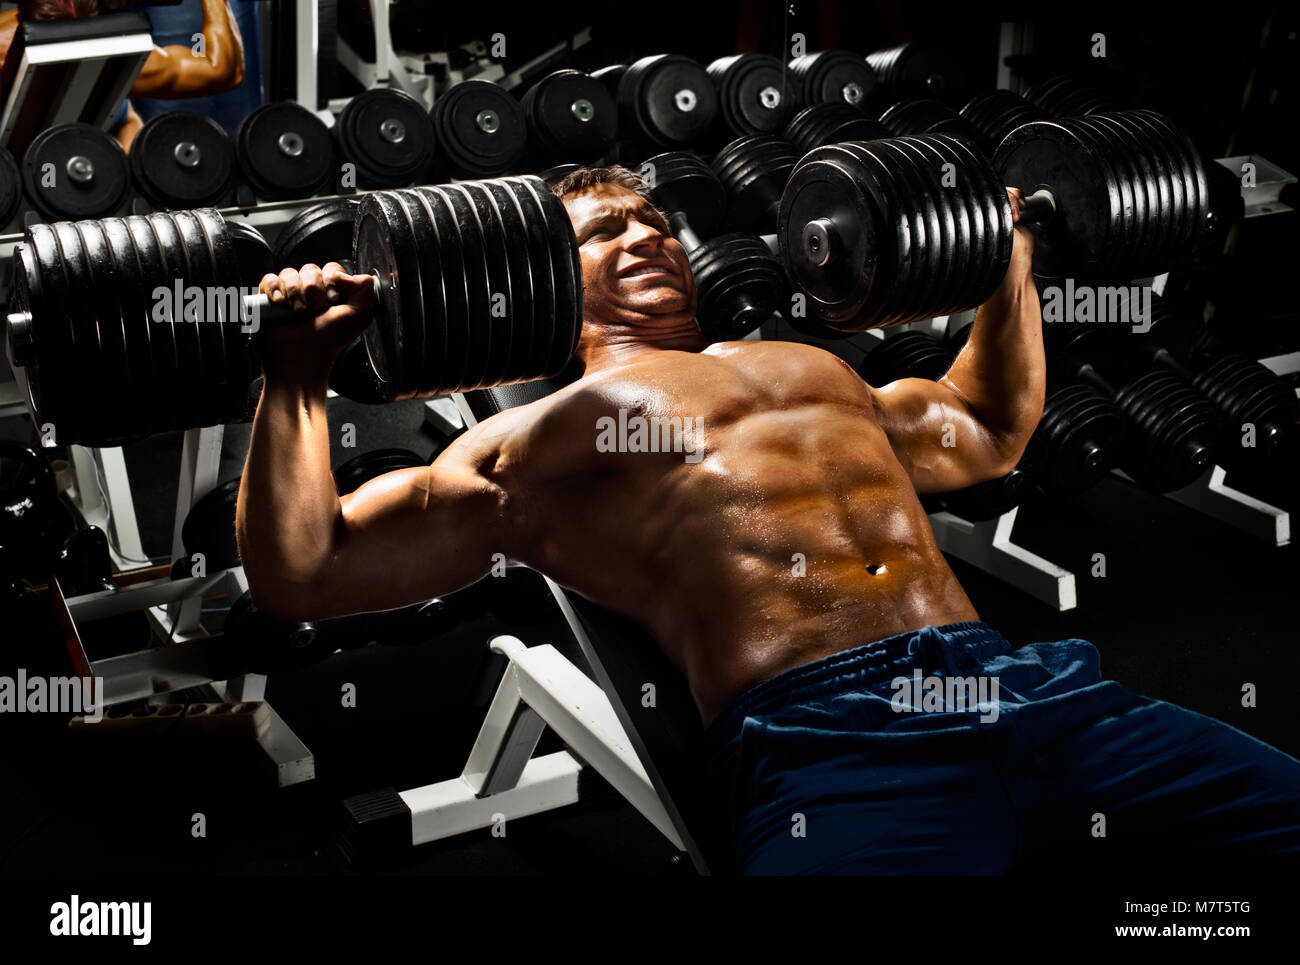 Hombres y mujeres fitness, culturismo deporte y pesas Foto Stock